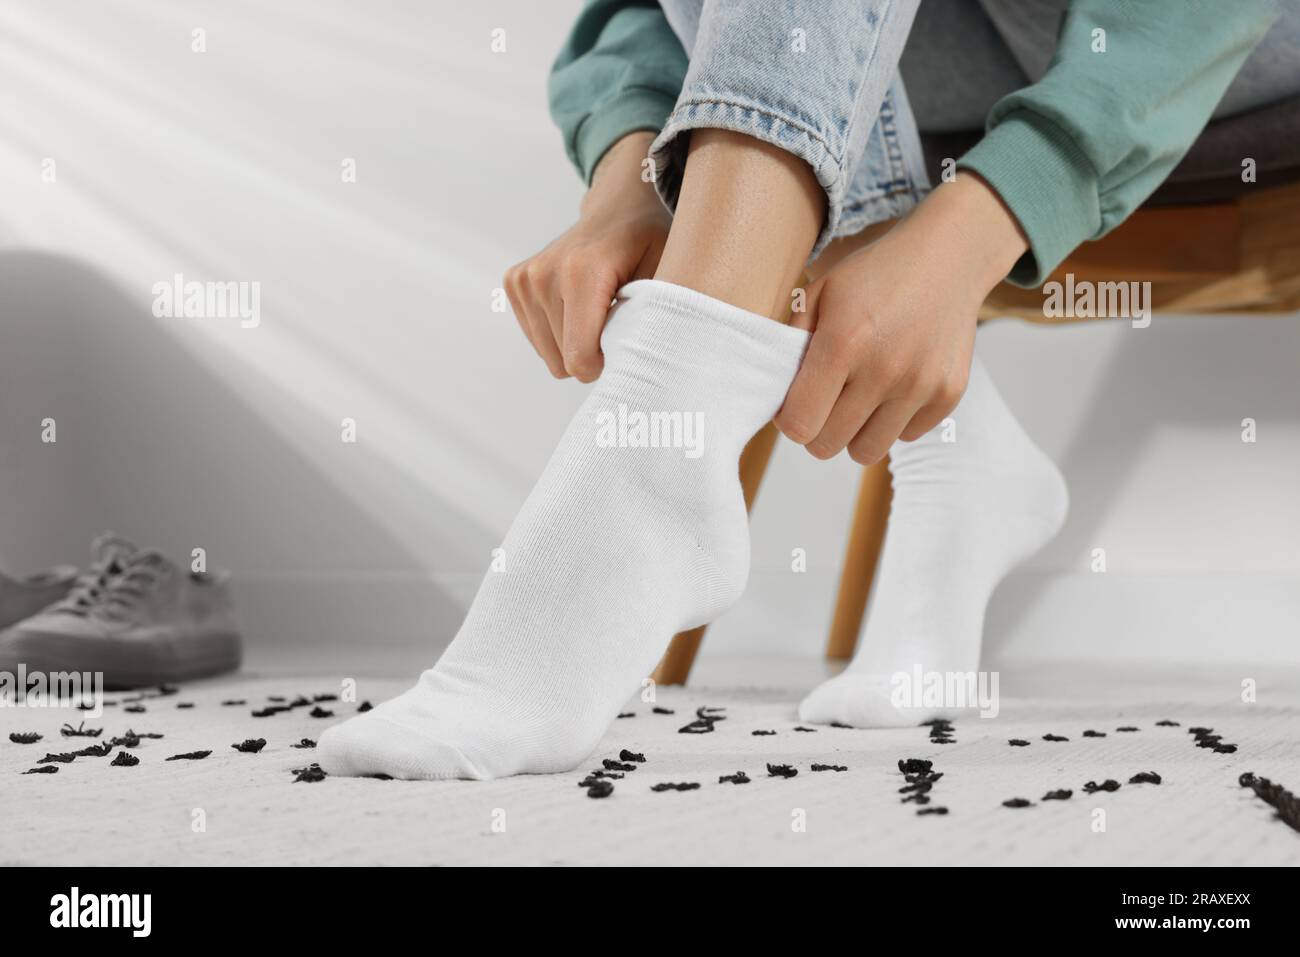 Mujer poniéndose calcetines blancos en casa, primer plano